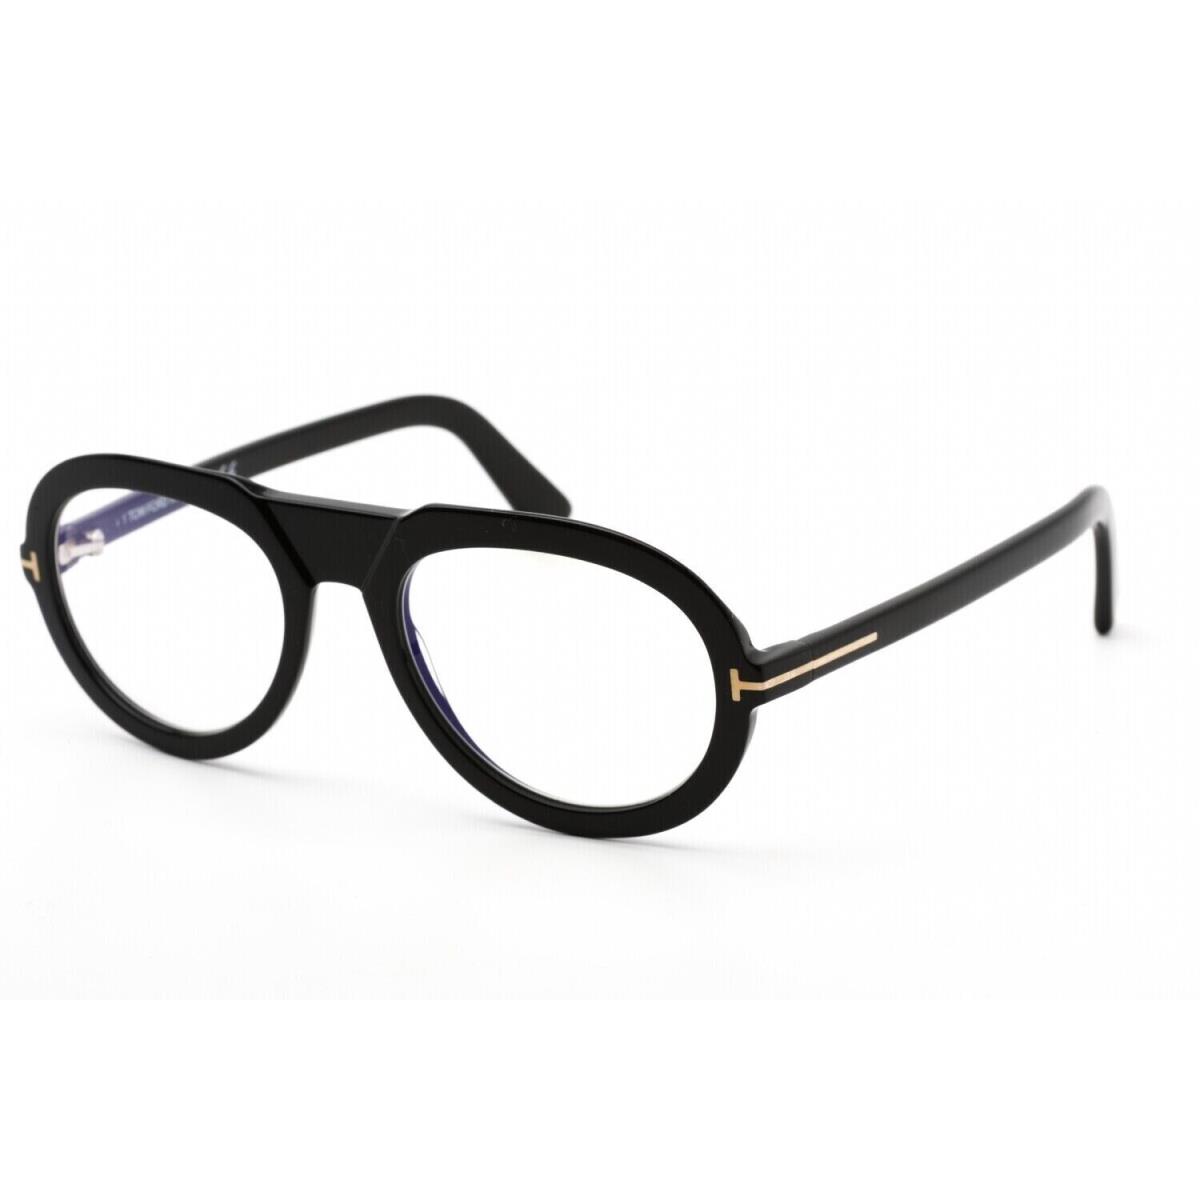 Tom Ford FT 5756 B 001 Shiny Black Eyeglasses Optical Frame 53mm